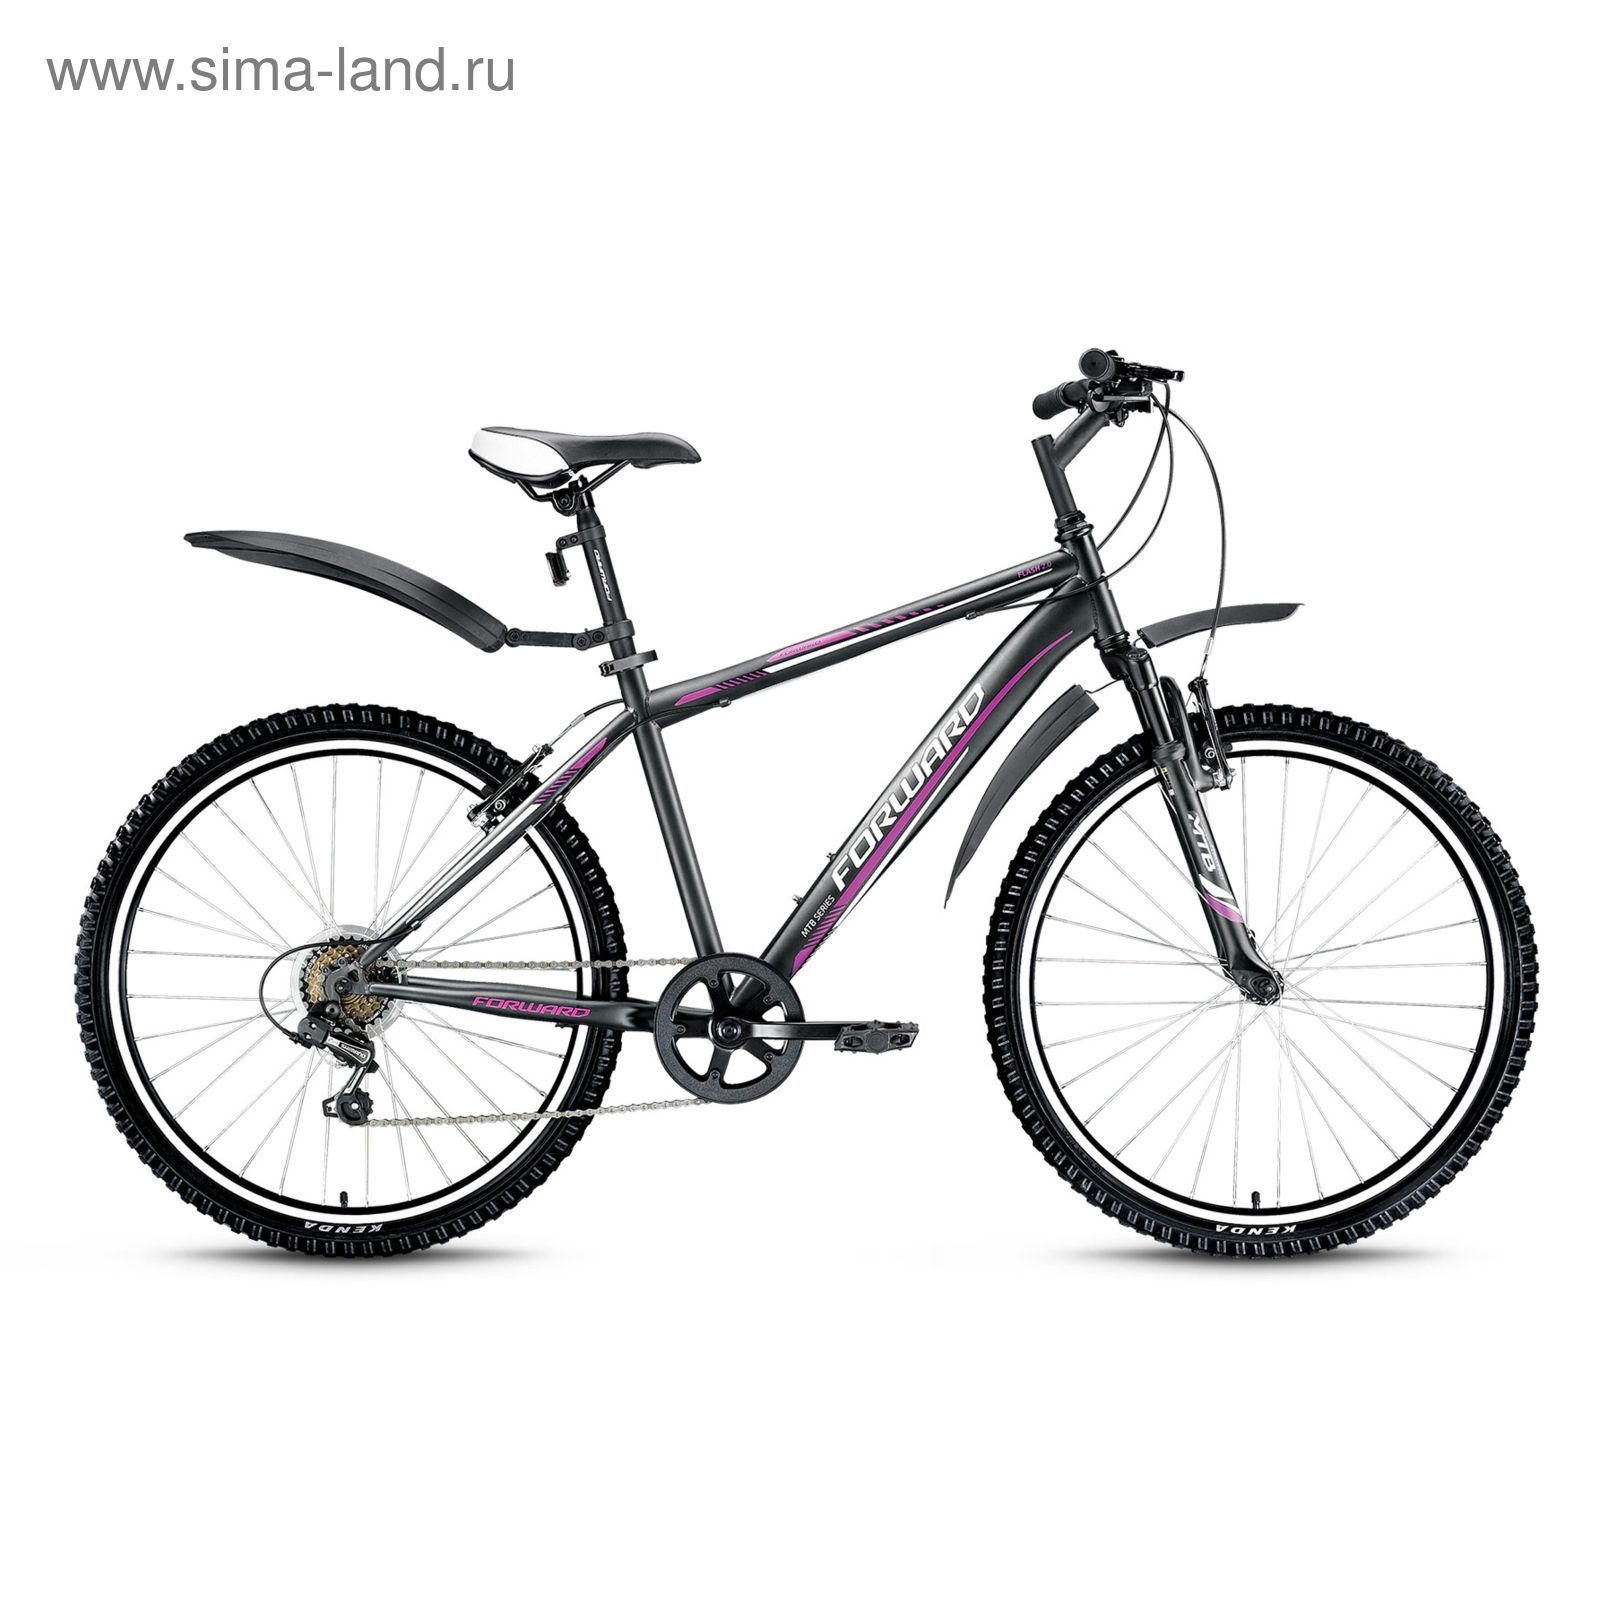 Велосипед 26" Forward Flash 2.0, 2016, цвет черный матовый, размер 13.5"